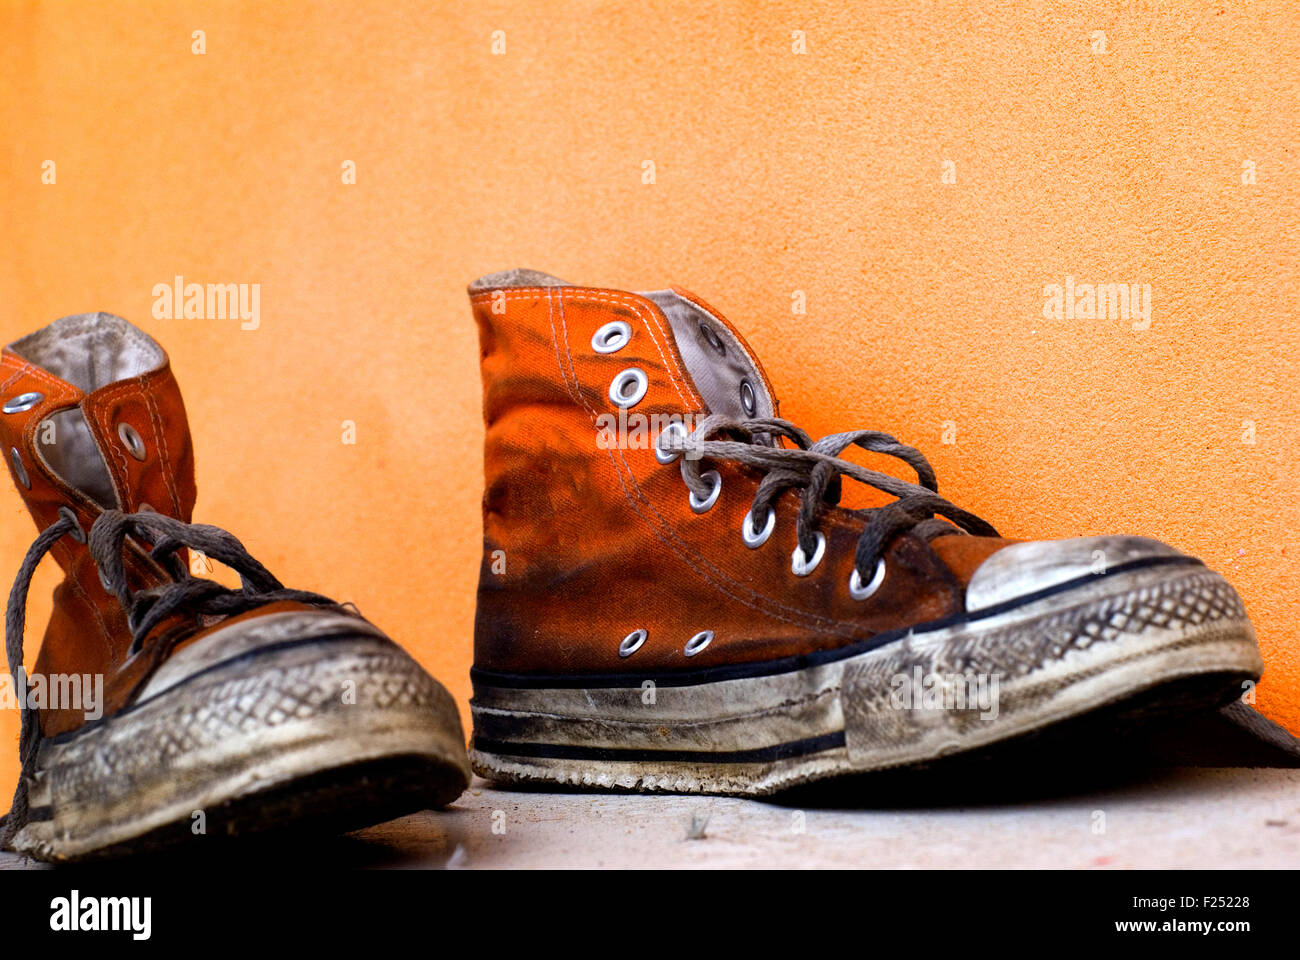 Analista Rey Lear Retirado Viejas y sucias zapatos Converse All Star naranja sobre un fondo naranja  Fotografía de stock - Alamy